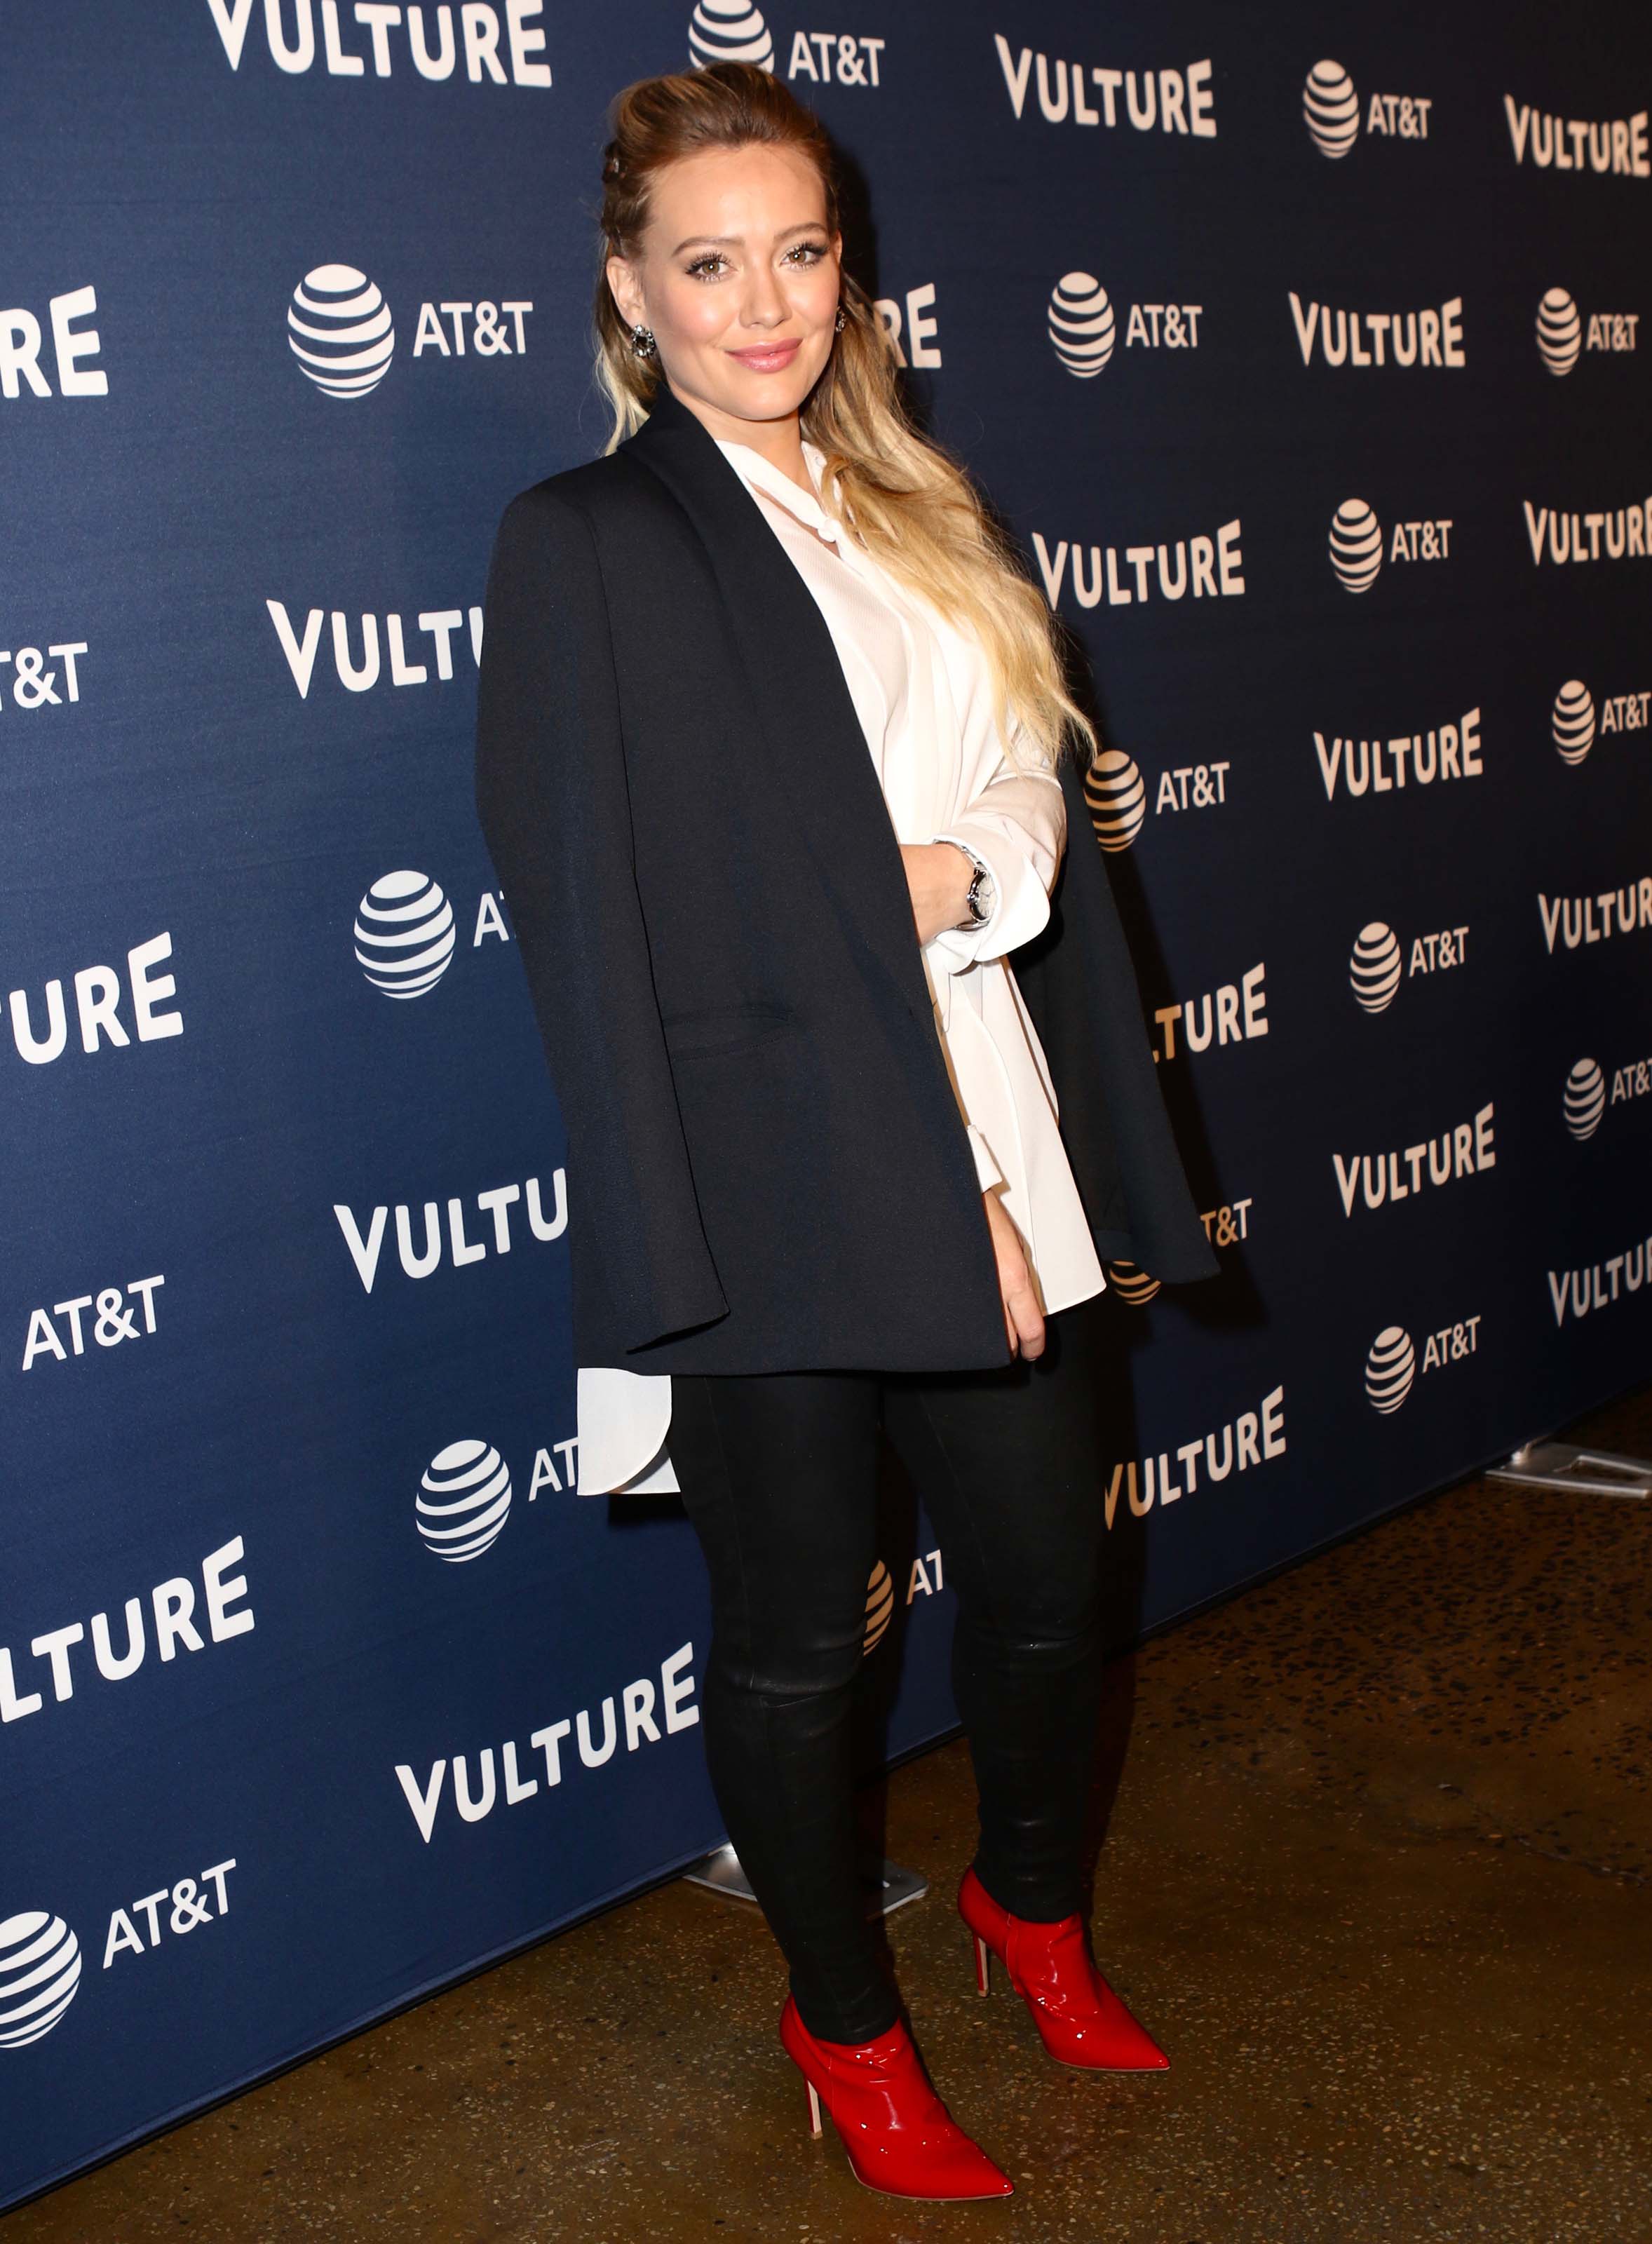 Hilary Duff attends Vulture Festival